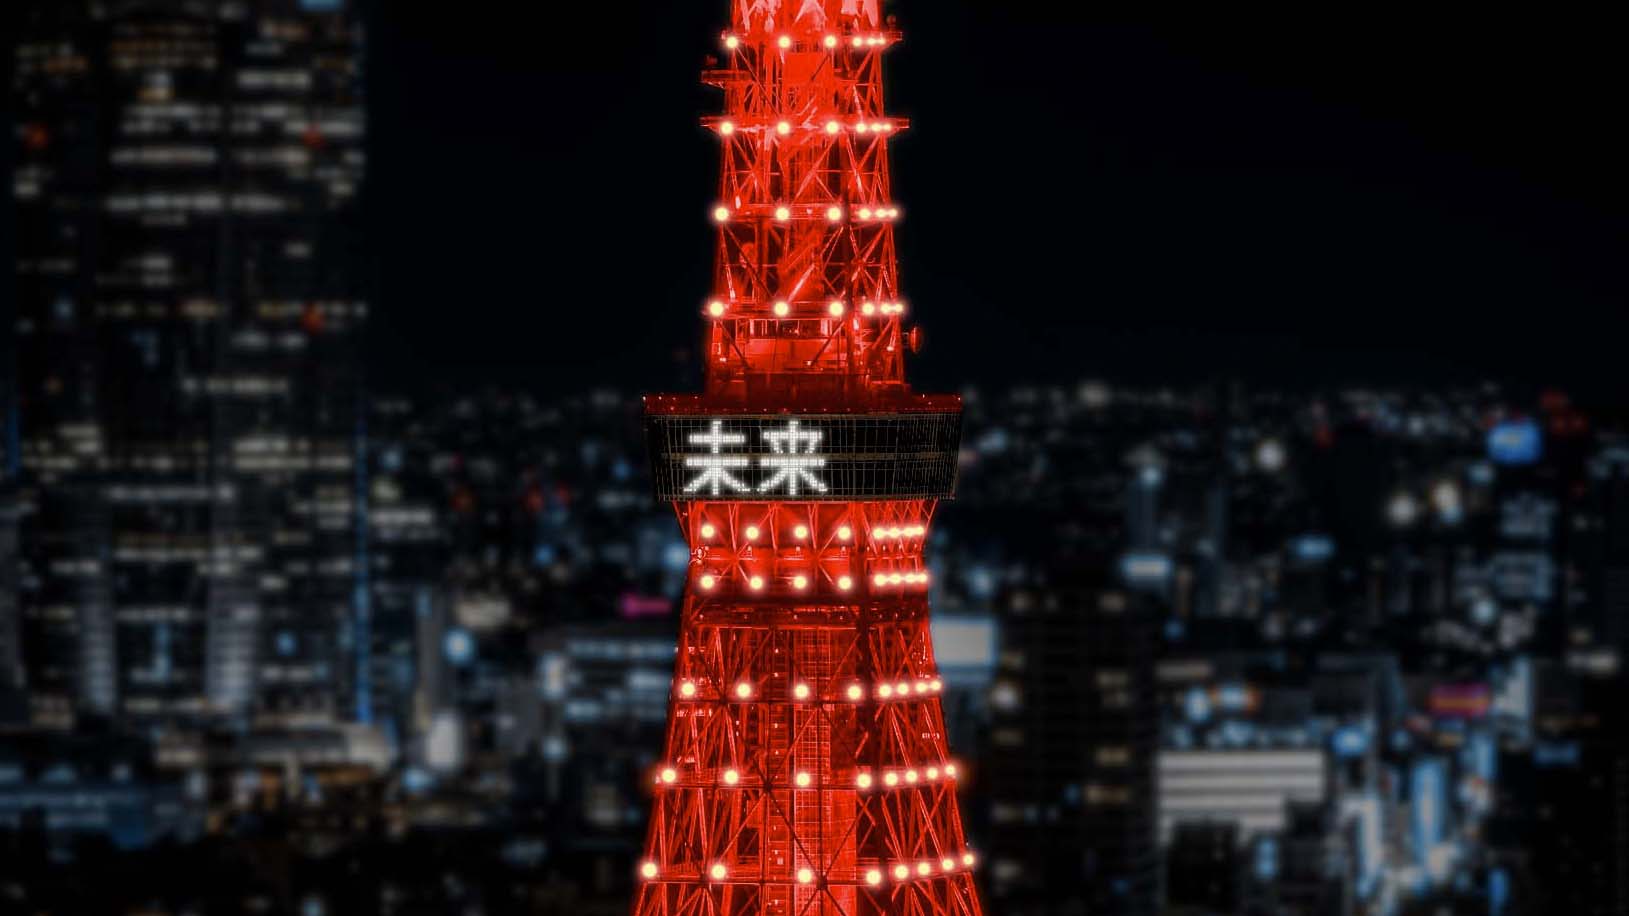 今年で開催4年目となる 東京タワー レッドライトアップ 開催 1月31日に1夜限りで東京タワー を赤くライトアップ日中国交正常化50周年を迎える22年の春節に東京タワー展望台に 未来 の2文字が灯る 東京タワー レッドライトアップ実行委員会のプレスリリース